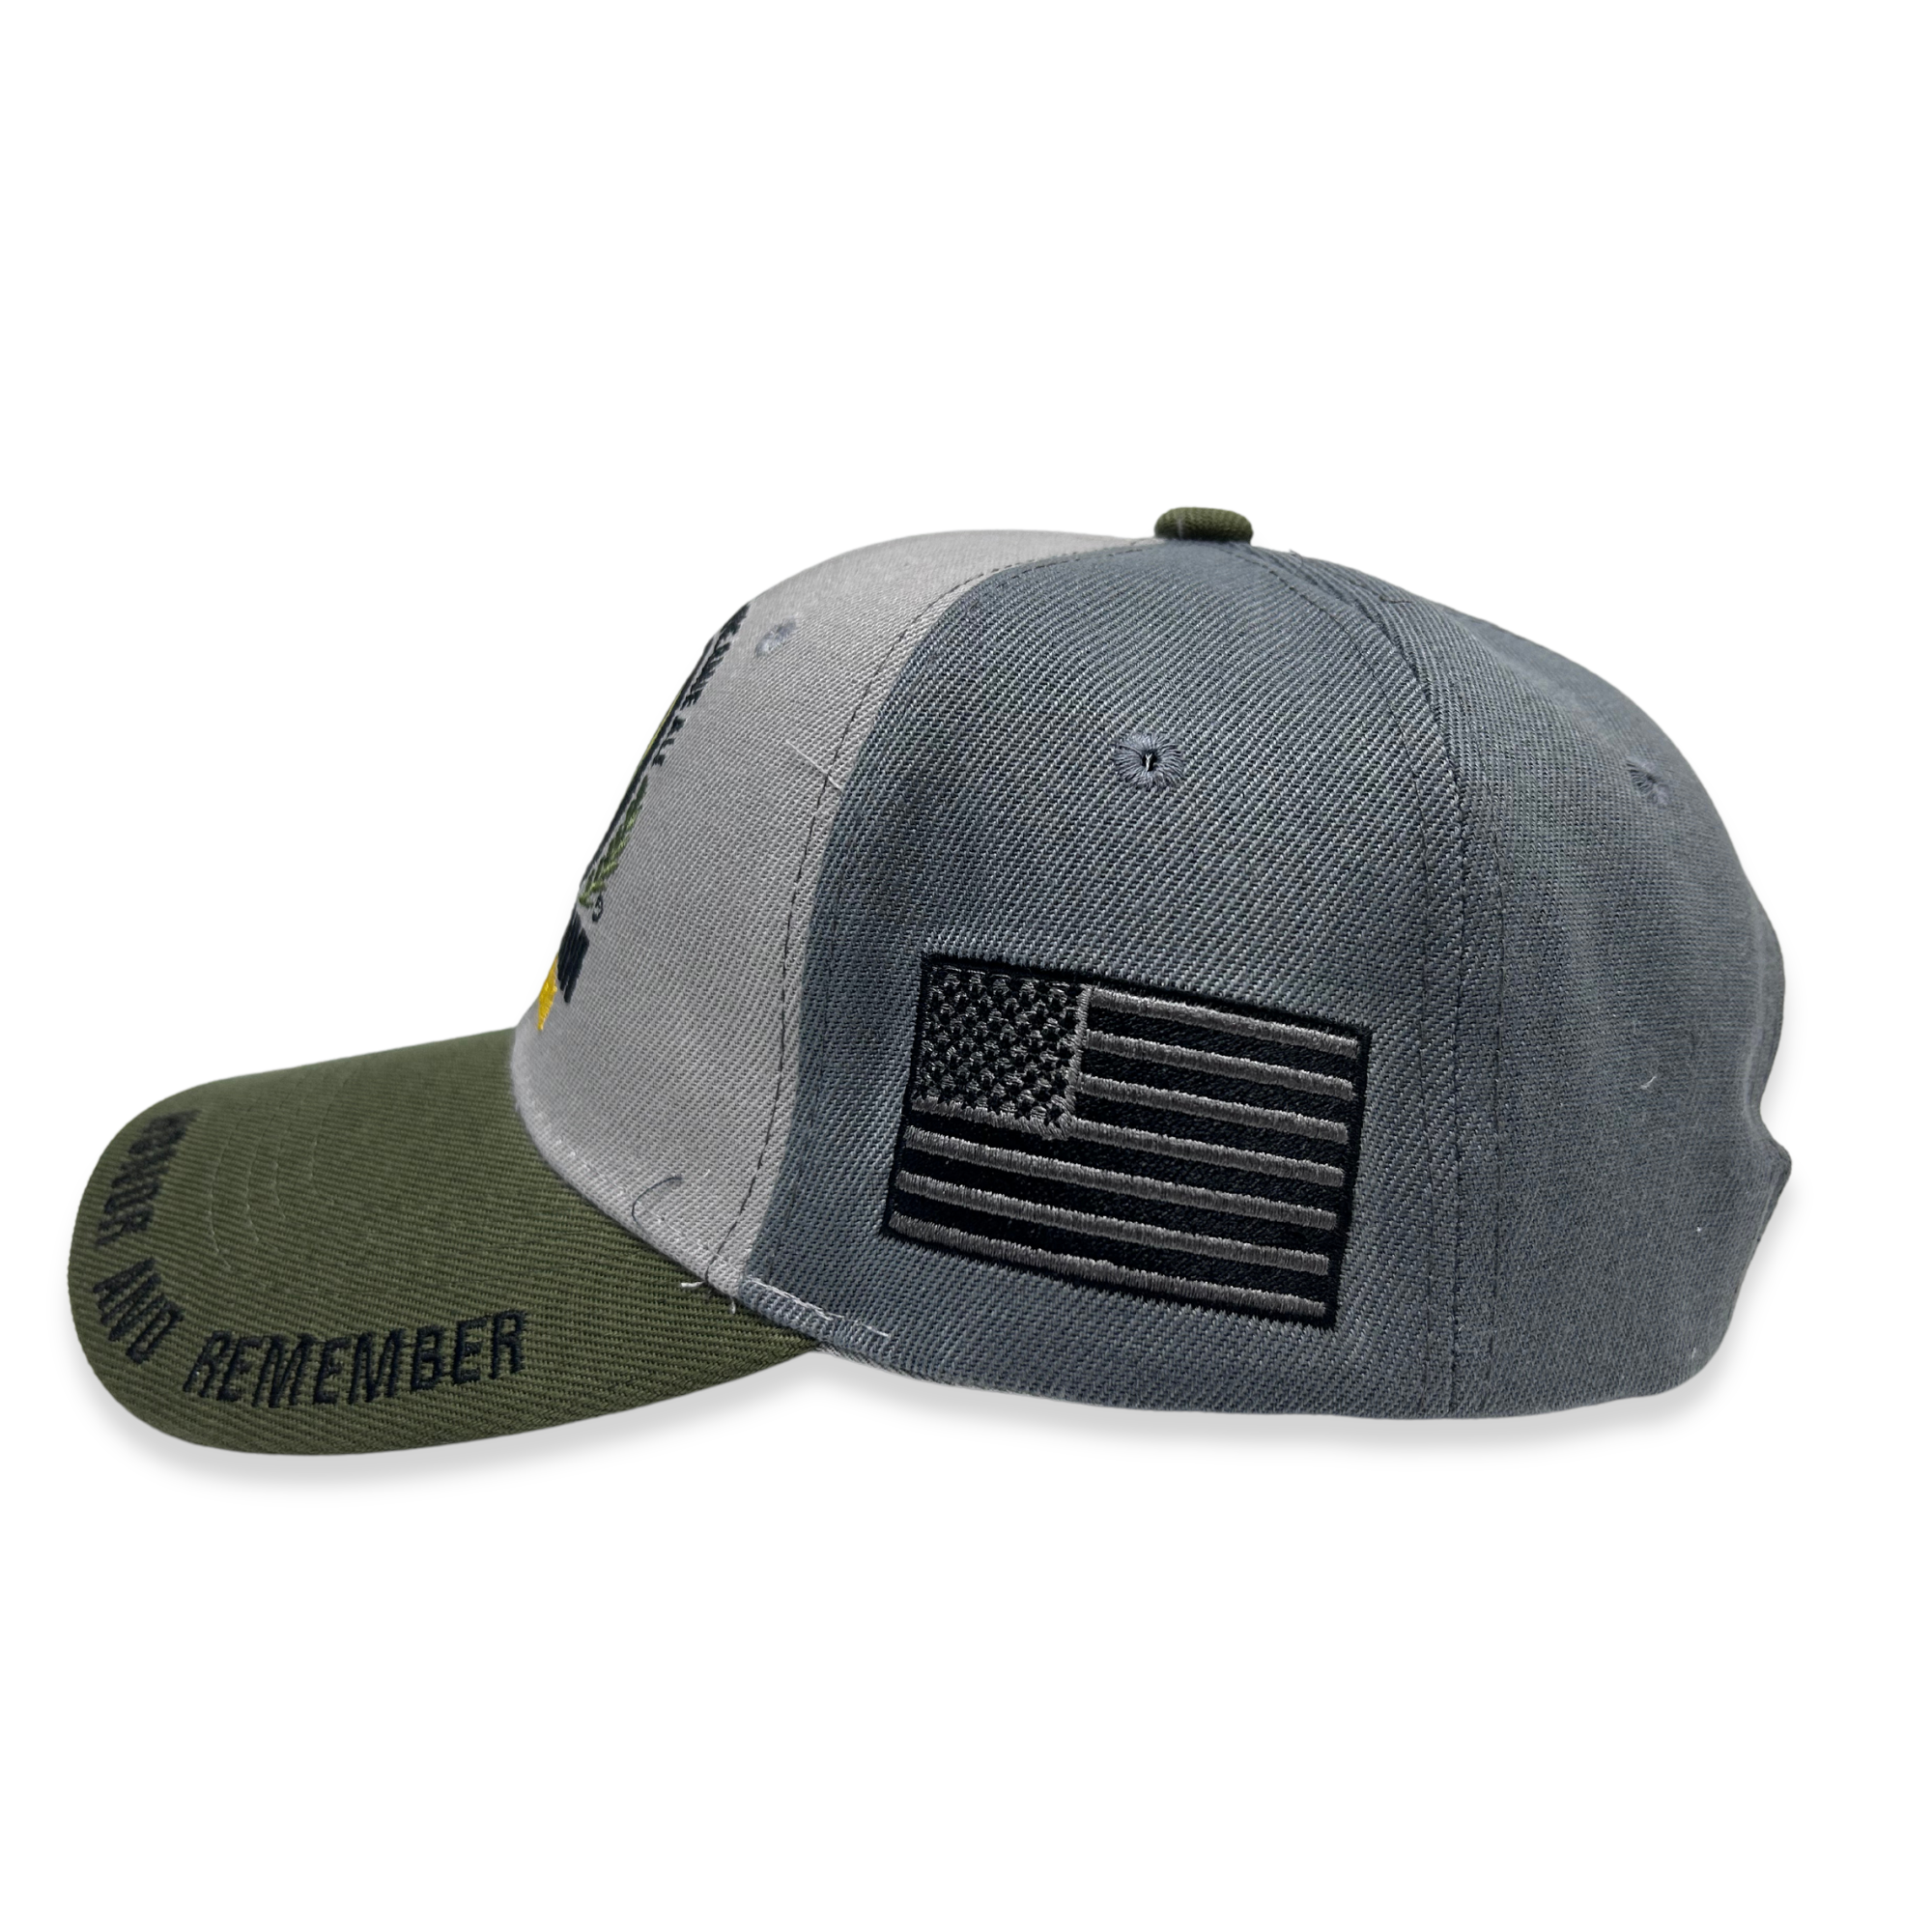 Vietnam Veteran Honor and Remember Hat (Grey/Green)